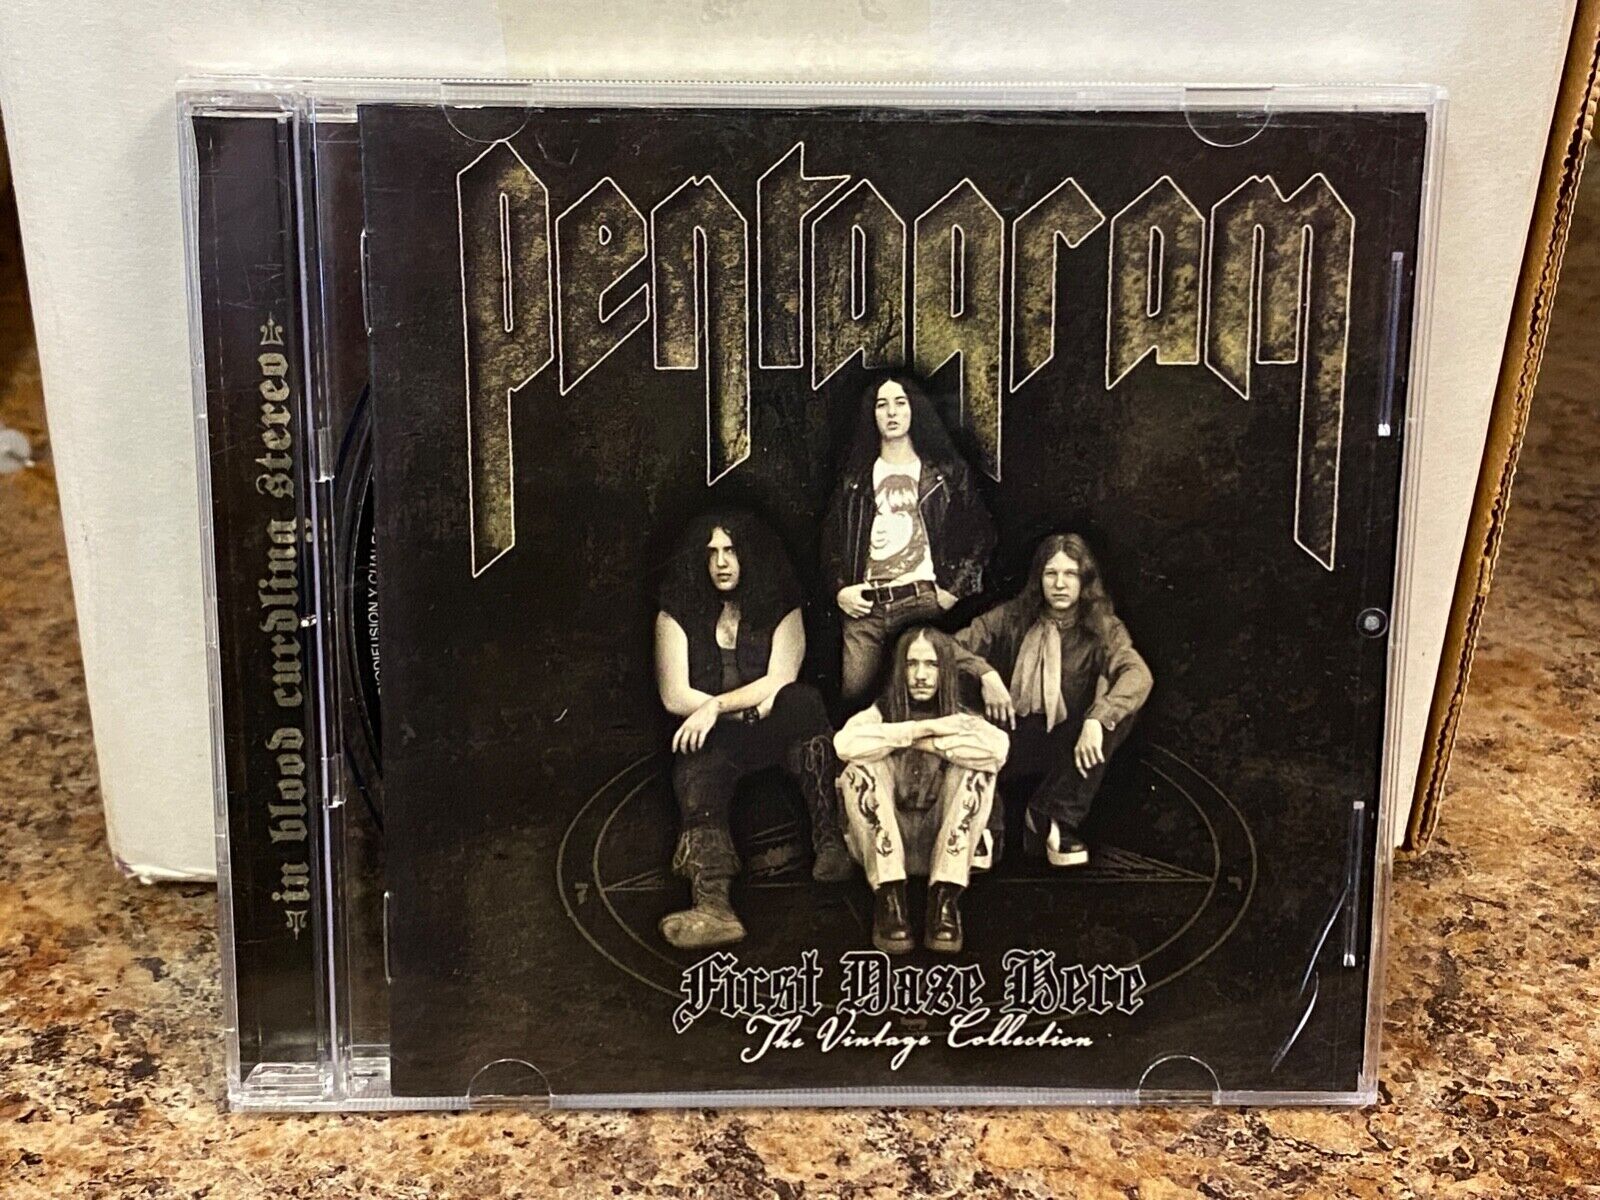 Pentagram First Daze Here The Vintage Collection CD 2006 IMPORT doom stoner VG+